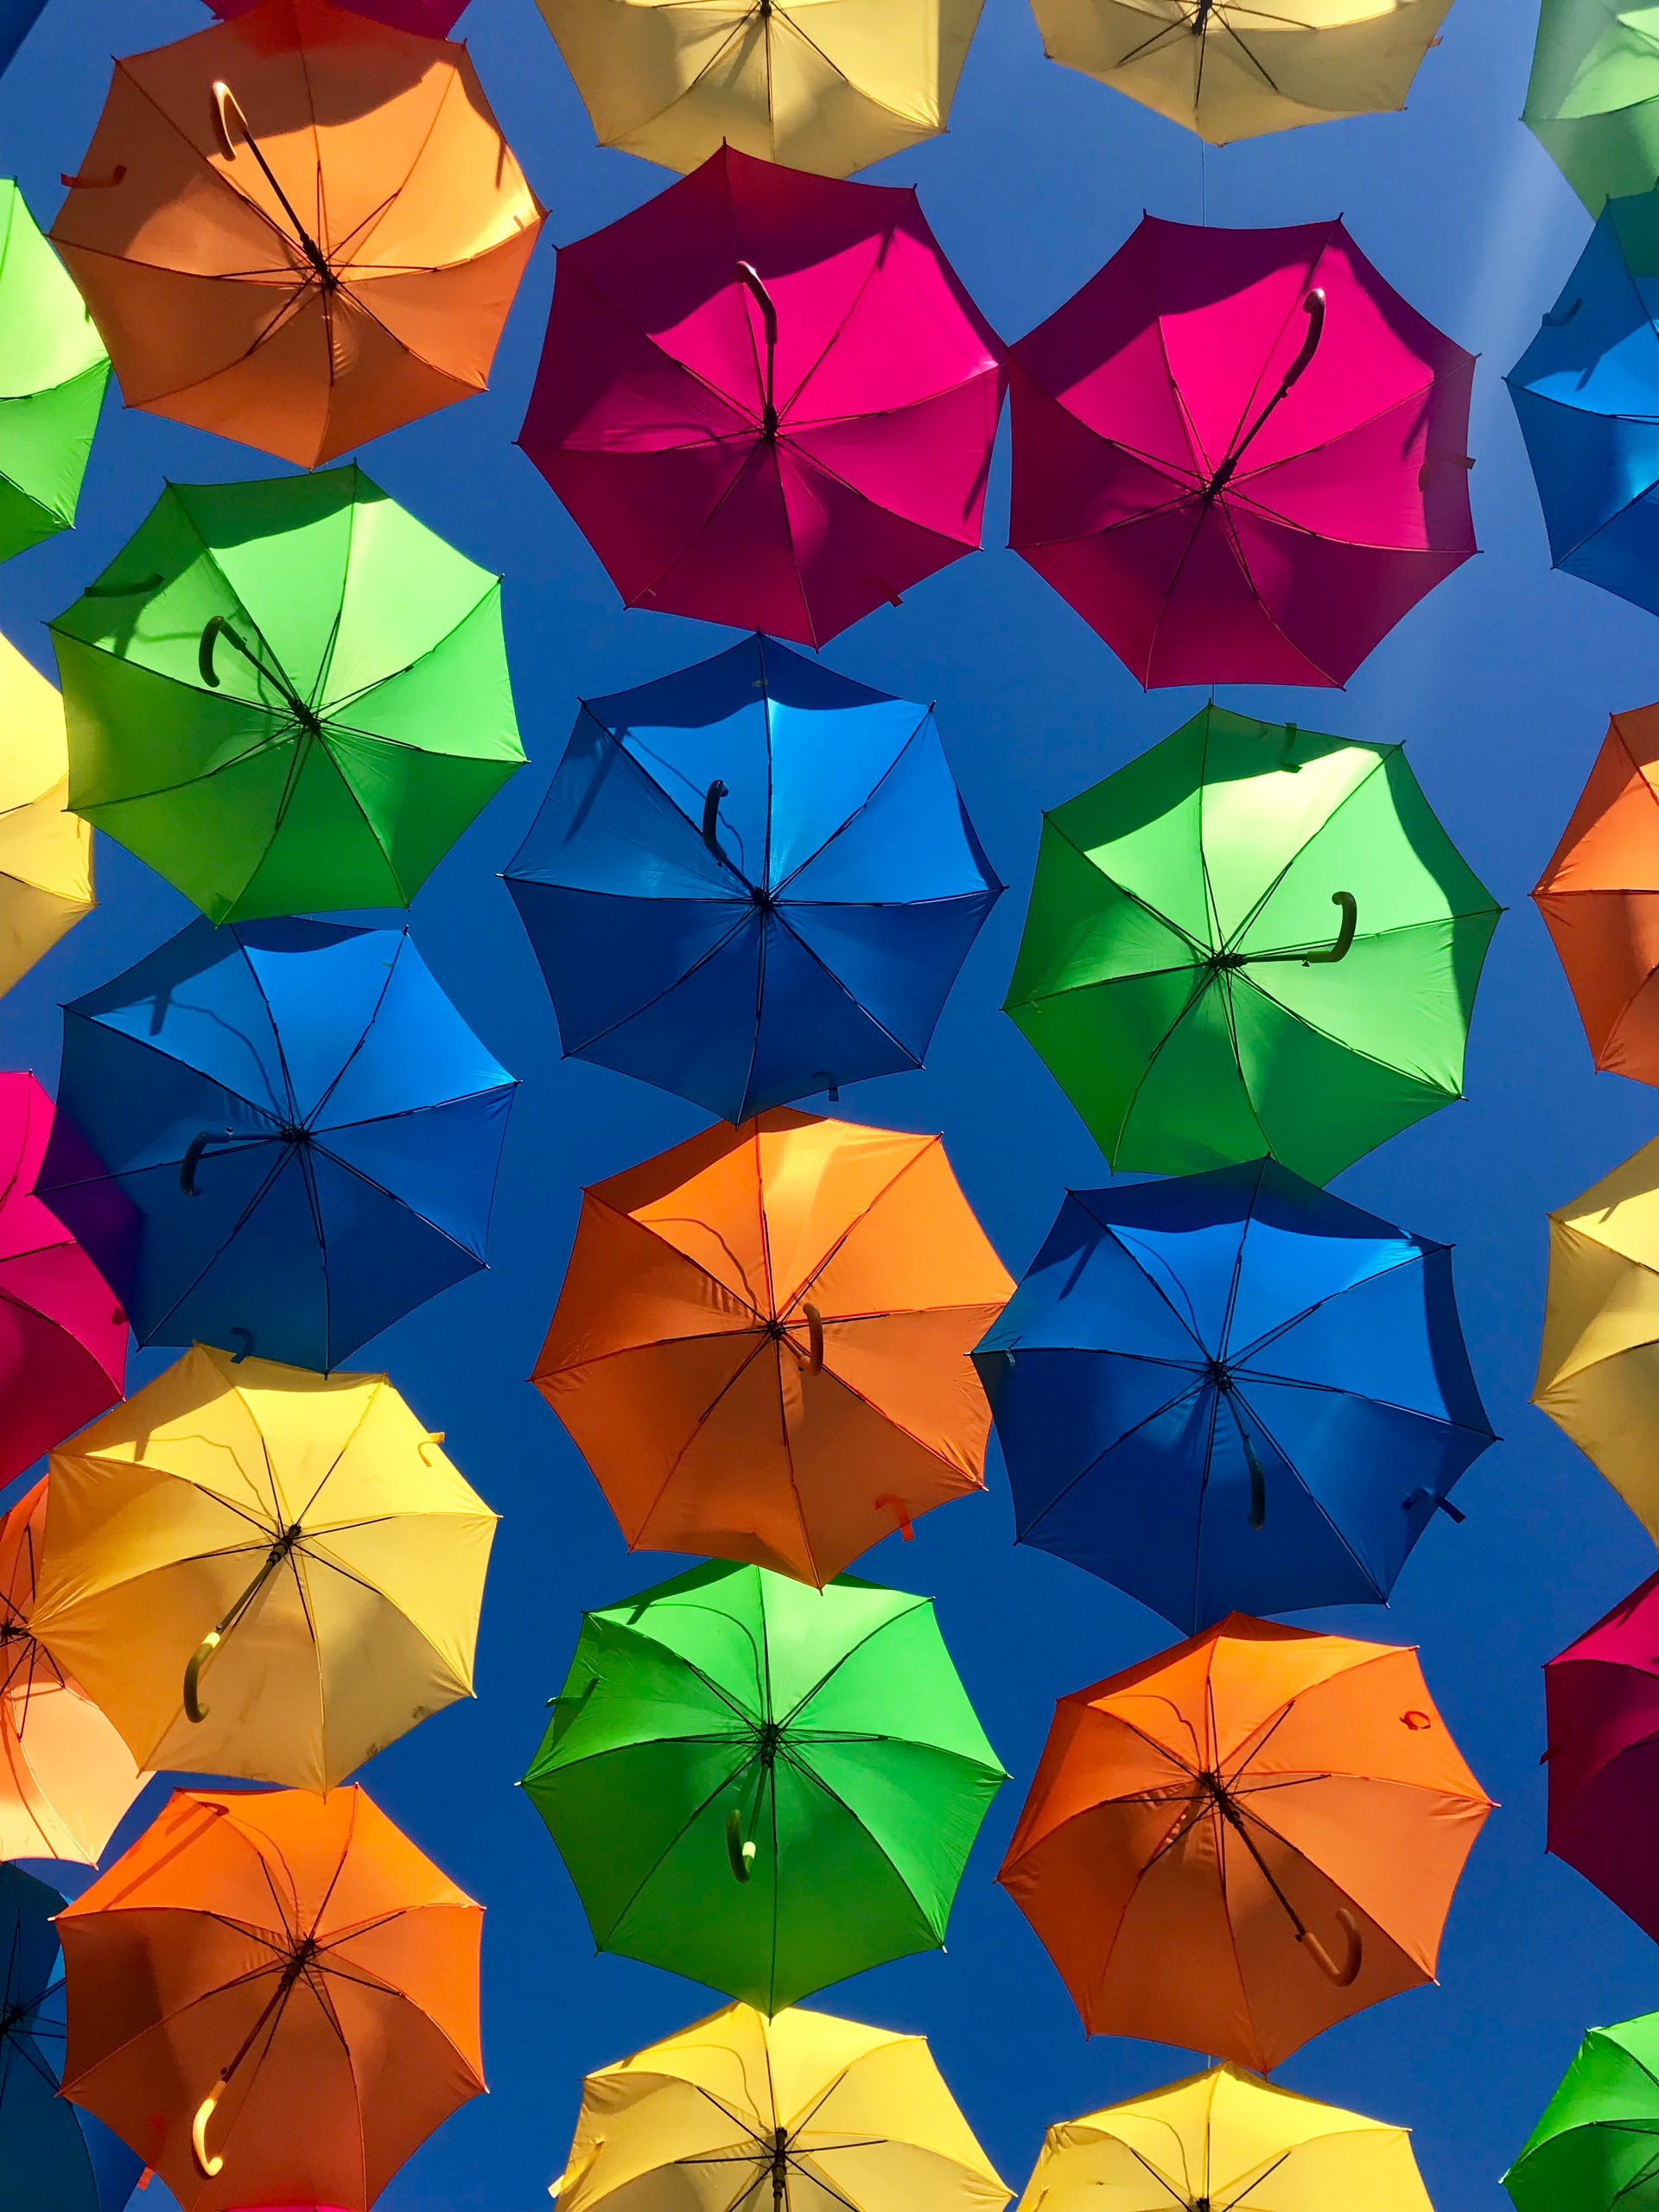 Verschiedenfarbige aufgespannte Regenschirme vor einem Hellblauen Hintergrund